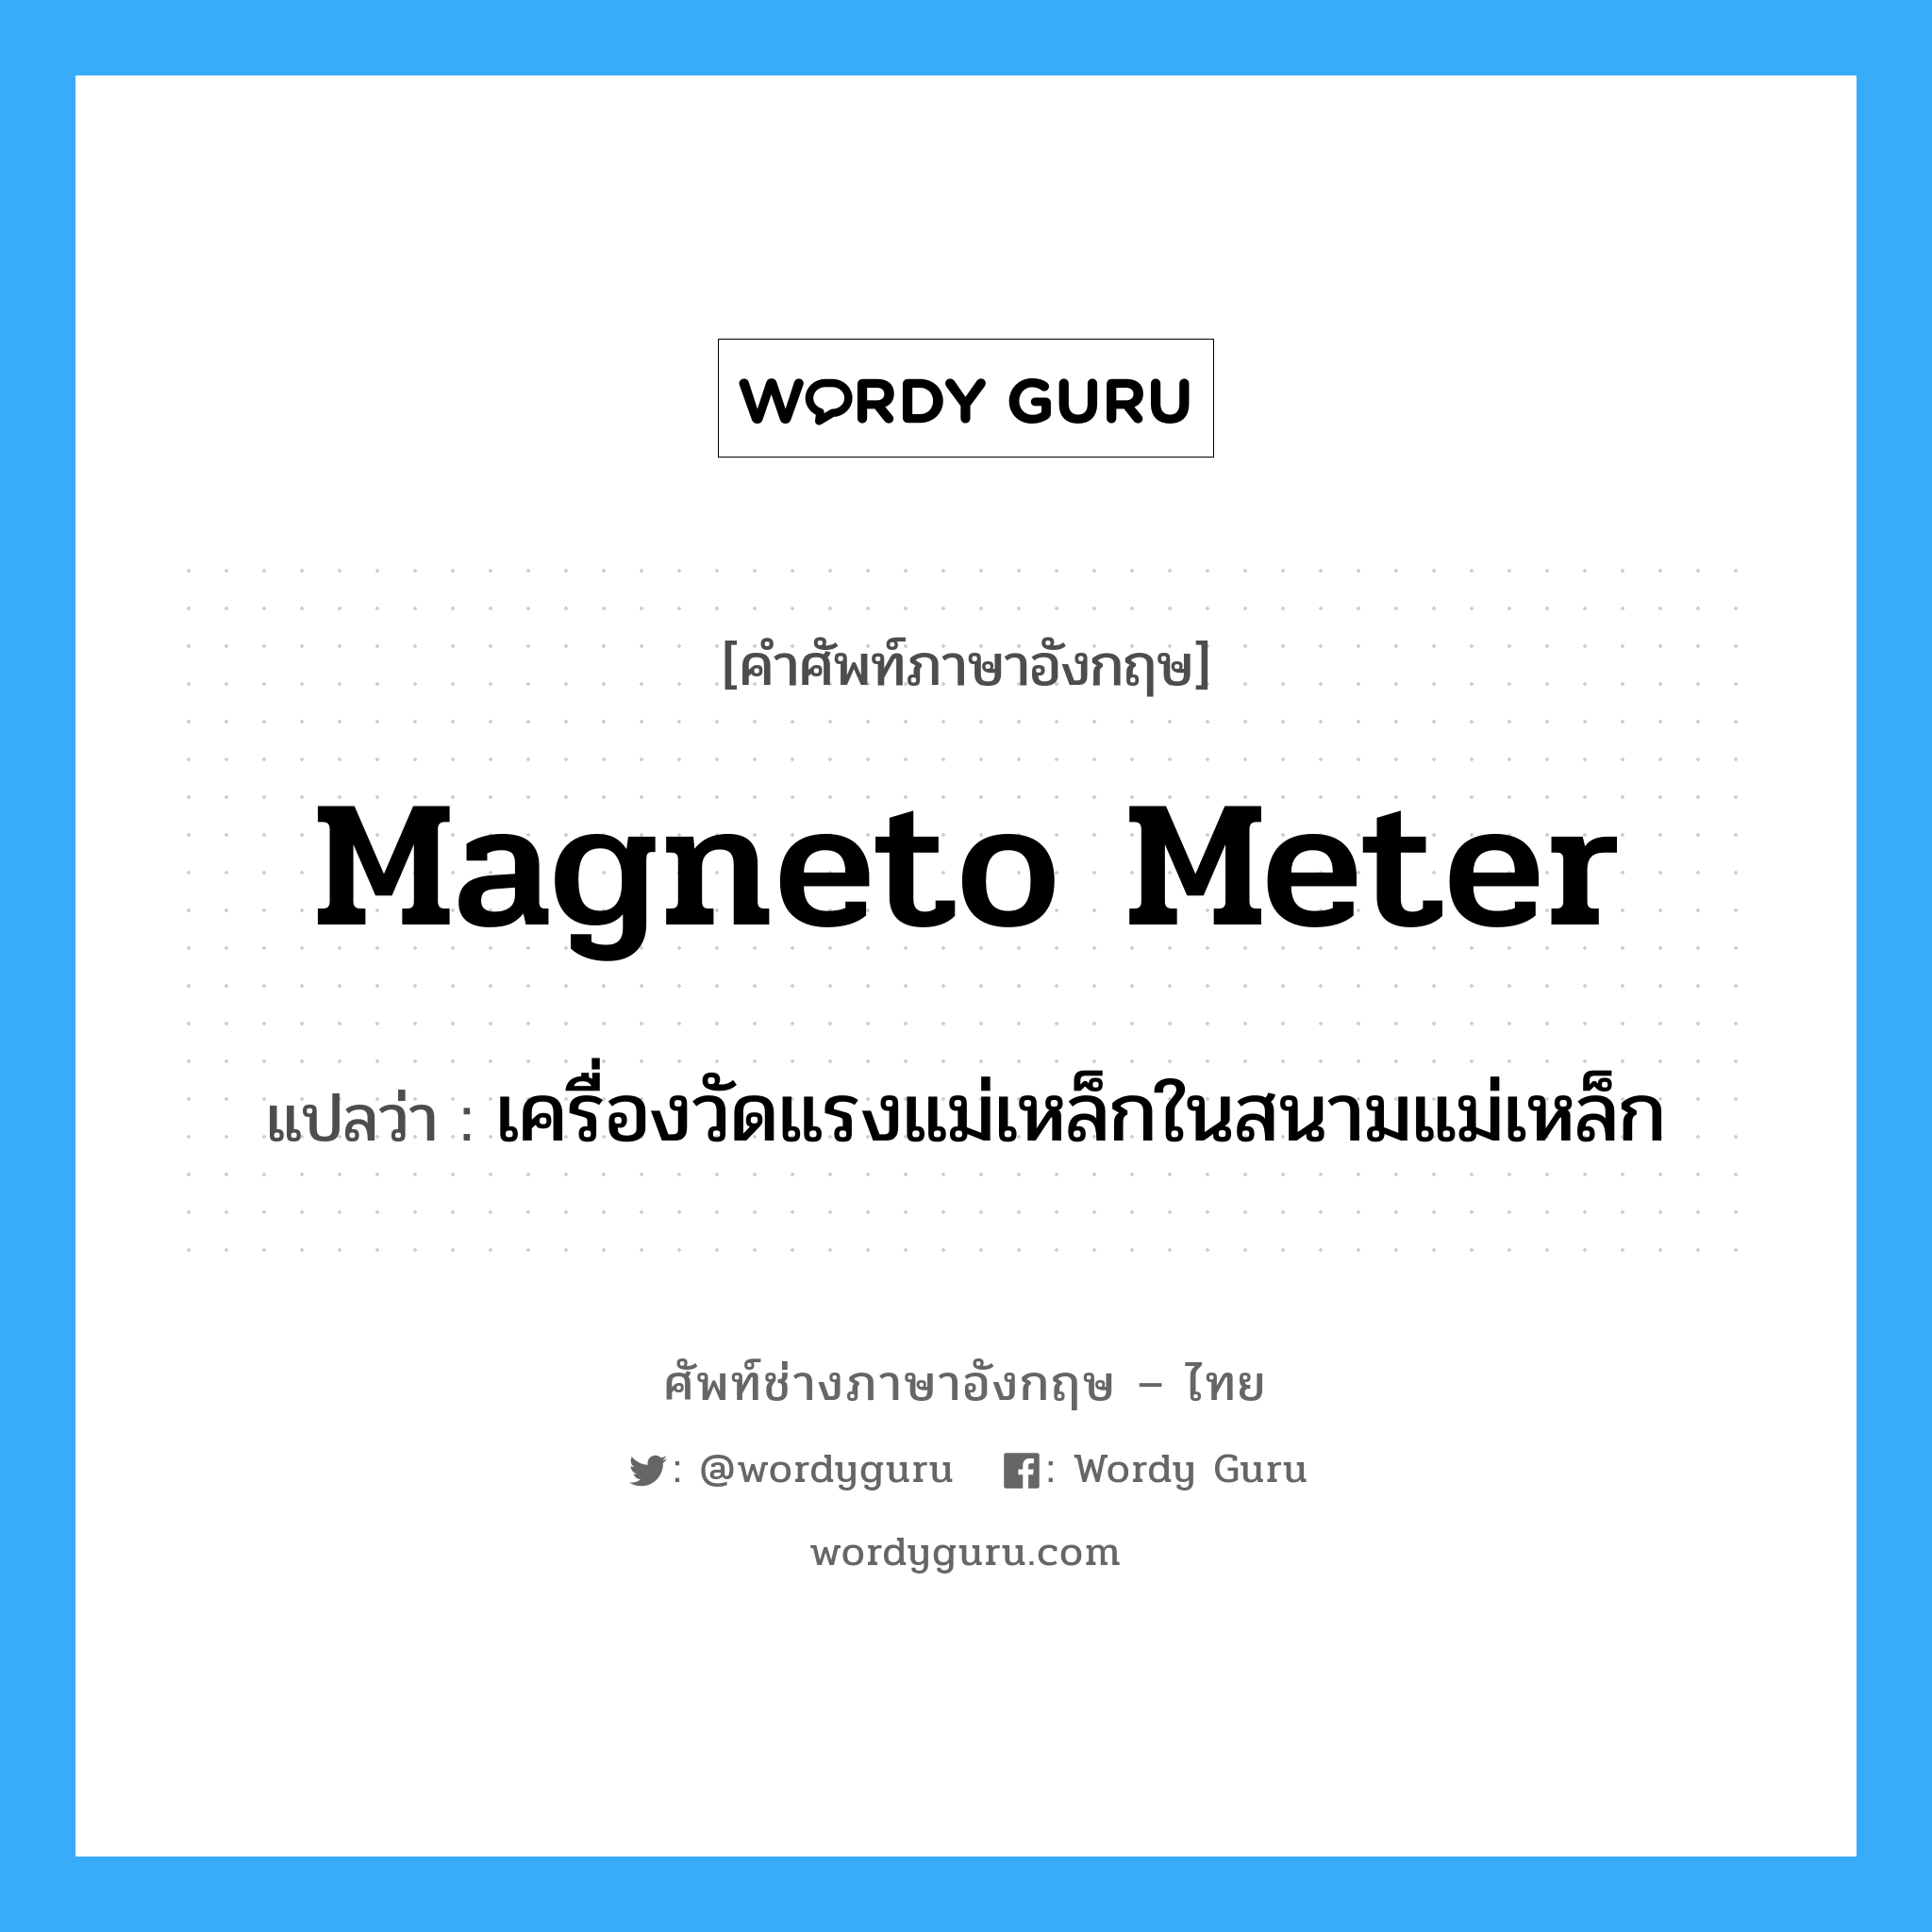 เครื่องวัดแรงแม่เหล็กในสนามแม่เหล็ก ภาษาอังกฤษ?, คำศัพท์ช่างภาษาอังกฤษ - ไทย เครื่องวัดแรงแม่เหล็กในสนามแม่เหล็ก คำศัพท์ภาษาอังกฤษ เครื่องวัดแรงแม่เหล็กในสนามแม่เหล็ก แปลว่า magneto meter